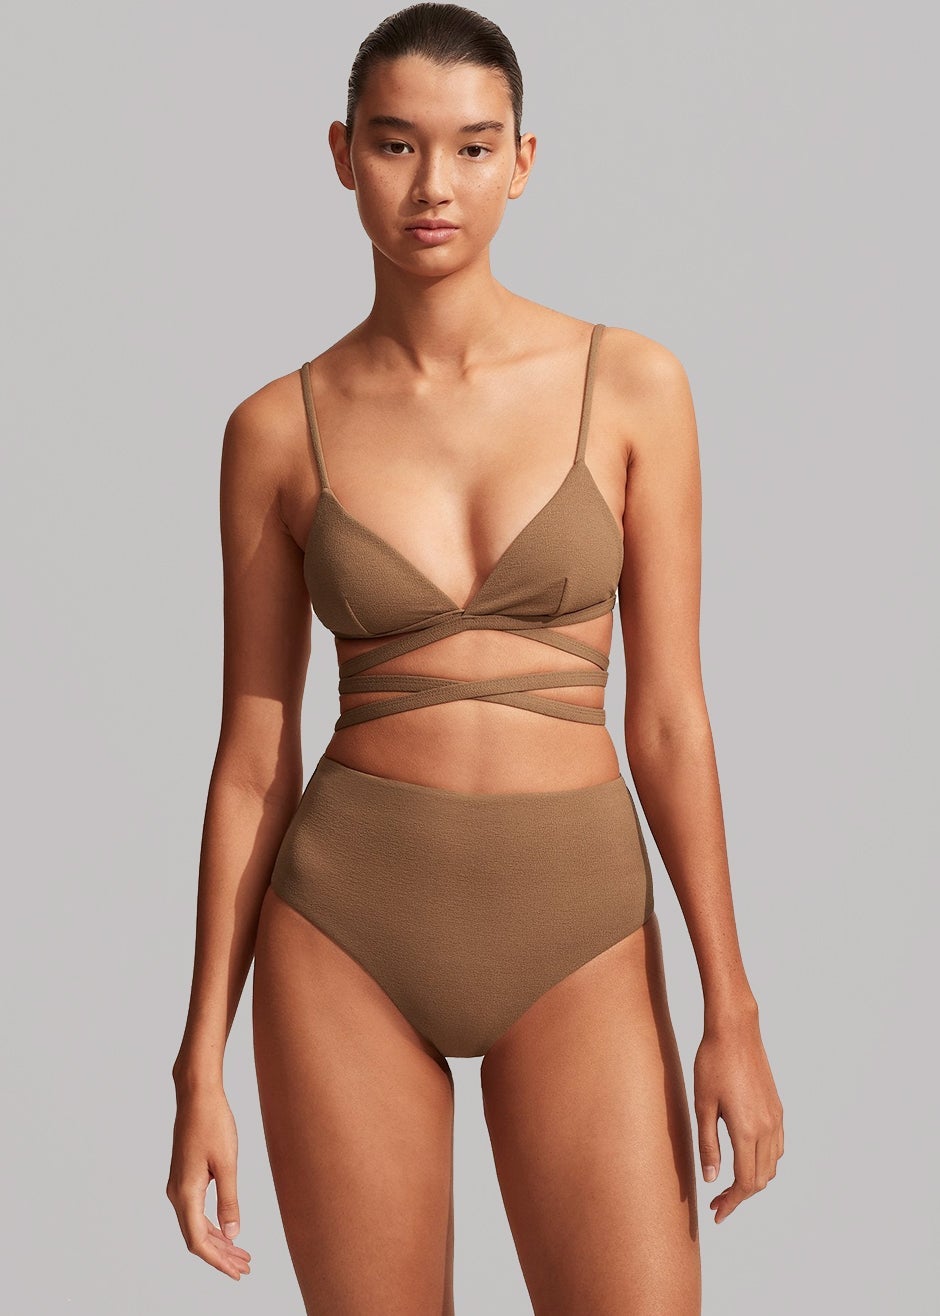 Matteau Wrap Triangle Bikini Top - Cinnamon Crinkle